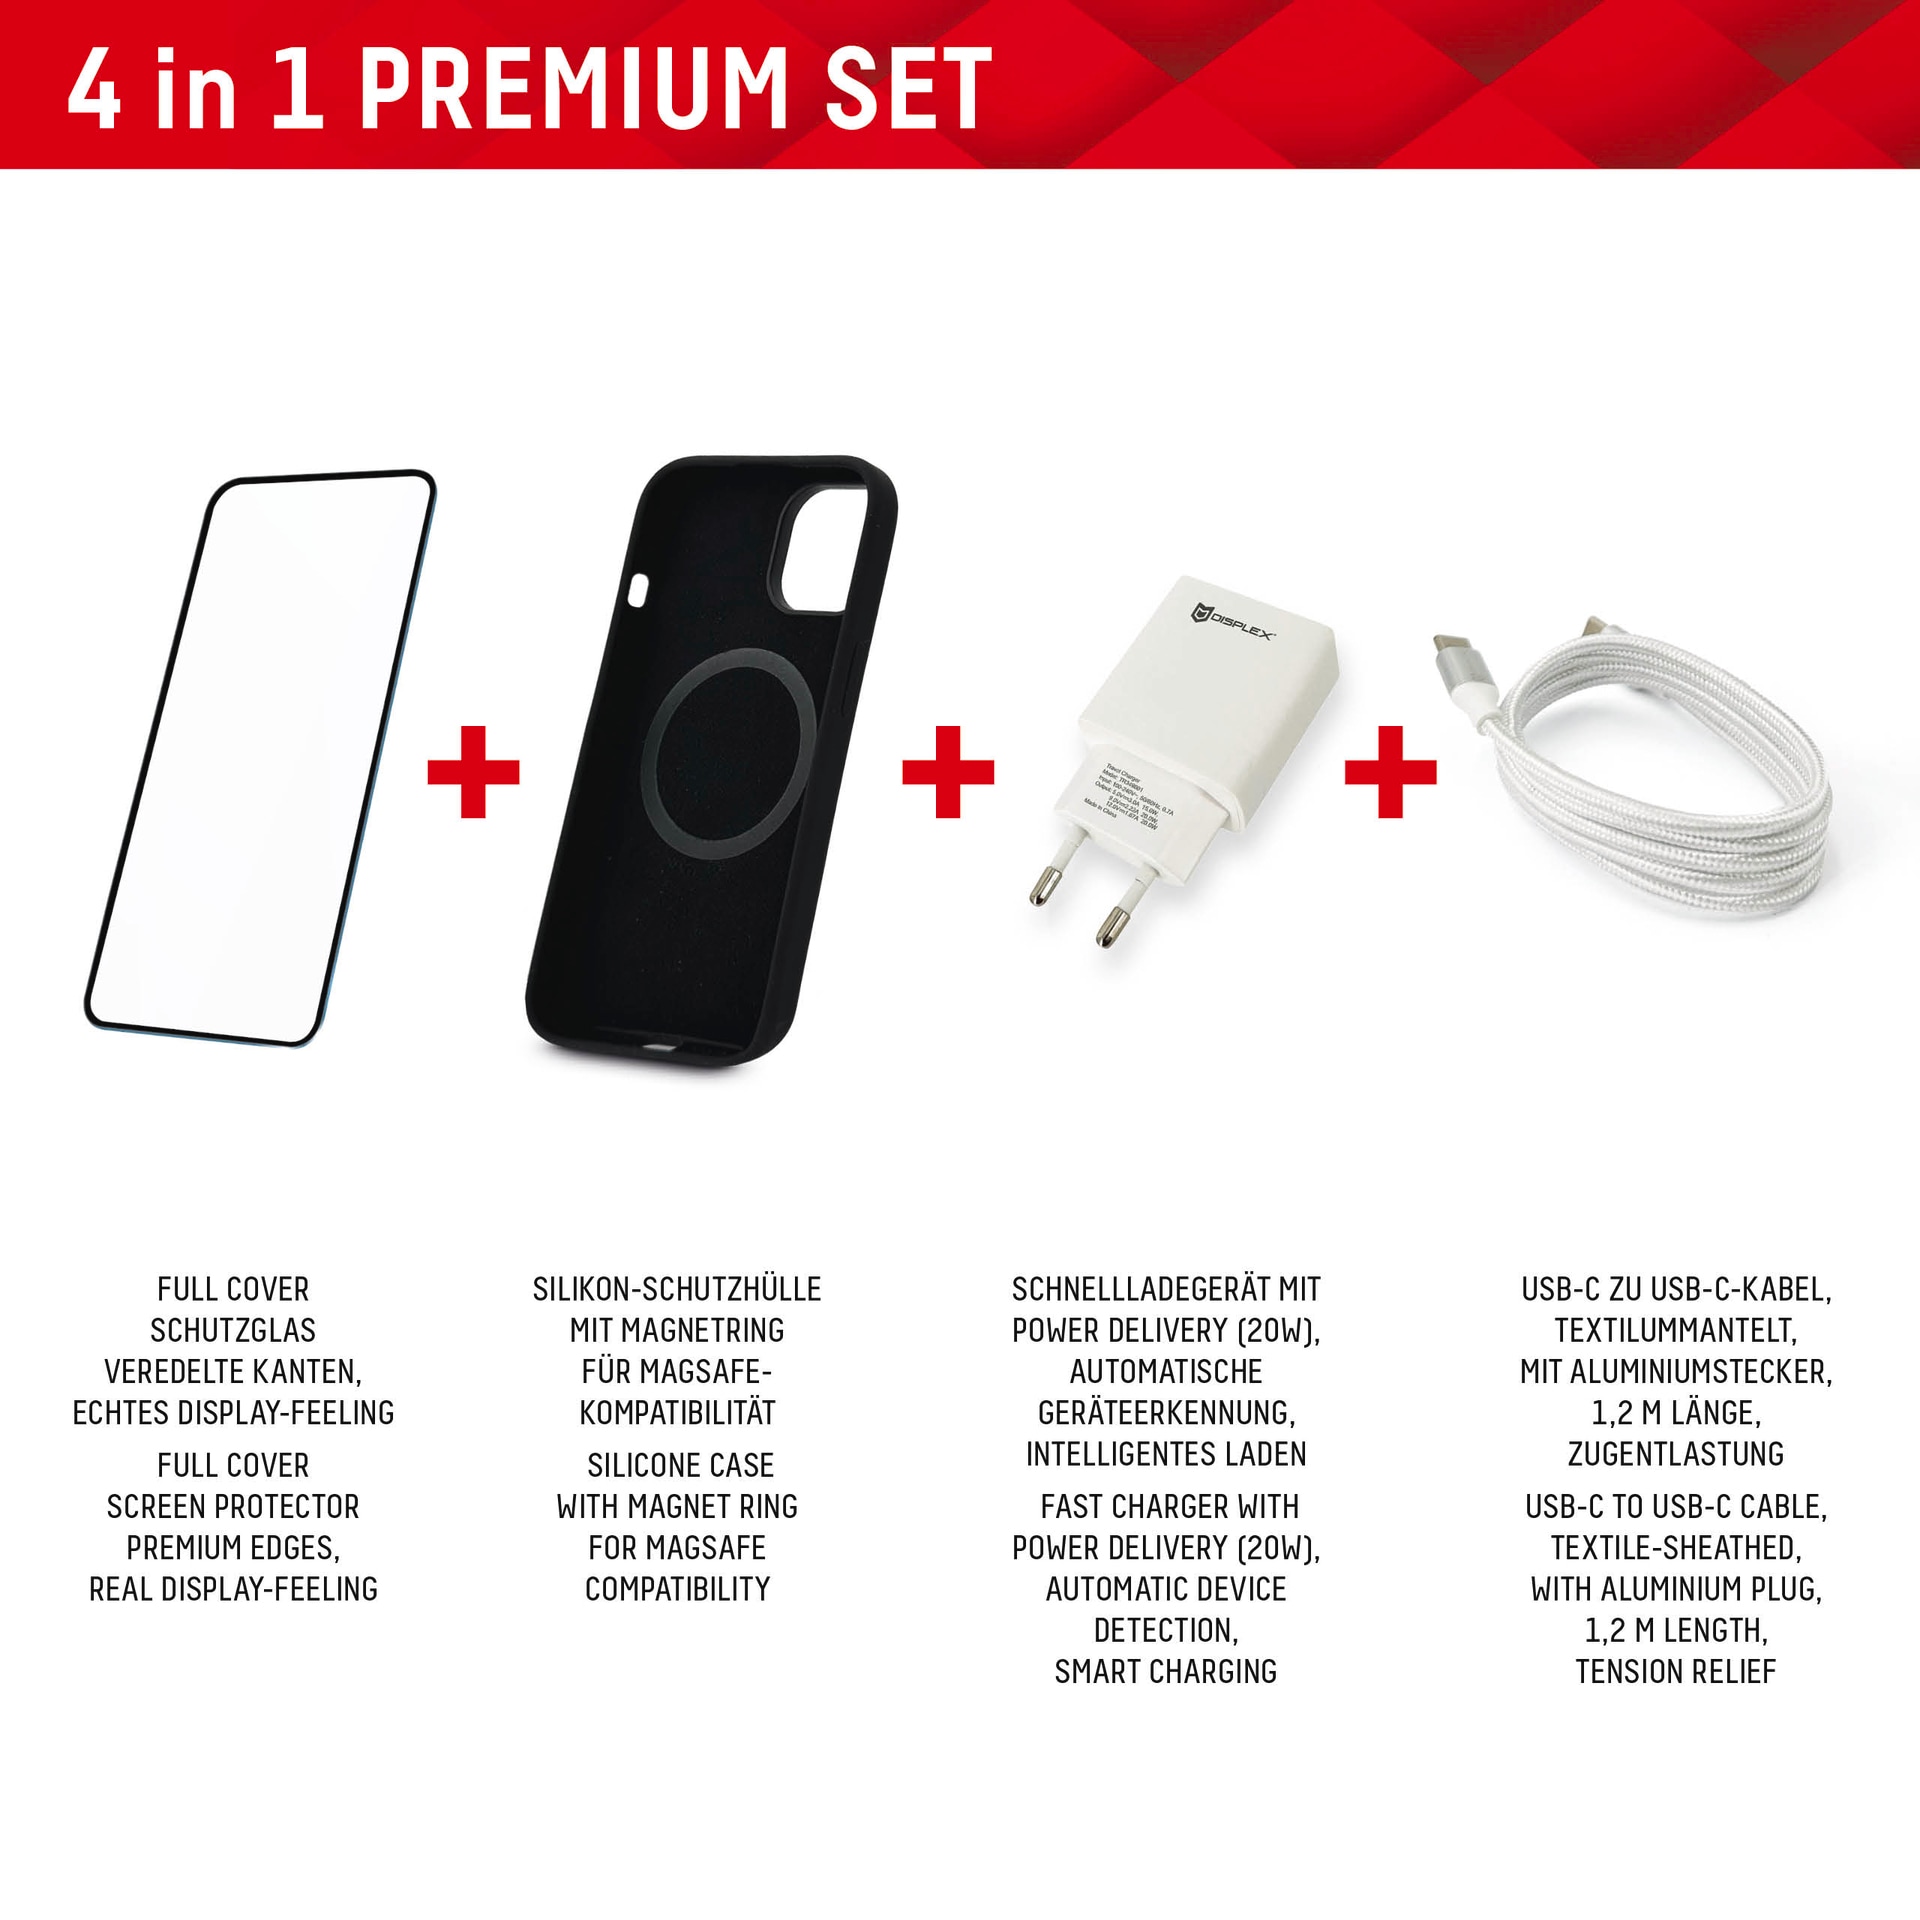 Displex Displayschutzglas »Premium Set 4in1«, für Apple iPhone 15 Plus, (Set, 4 St., bestehend aus Displayschutz, Case, Kabel, Netzteil), Displayschutzfolie Schnellladegerät 20 W MagSafe USB-C zu USB-C-Kabel